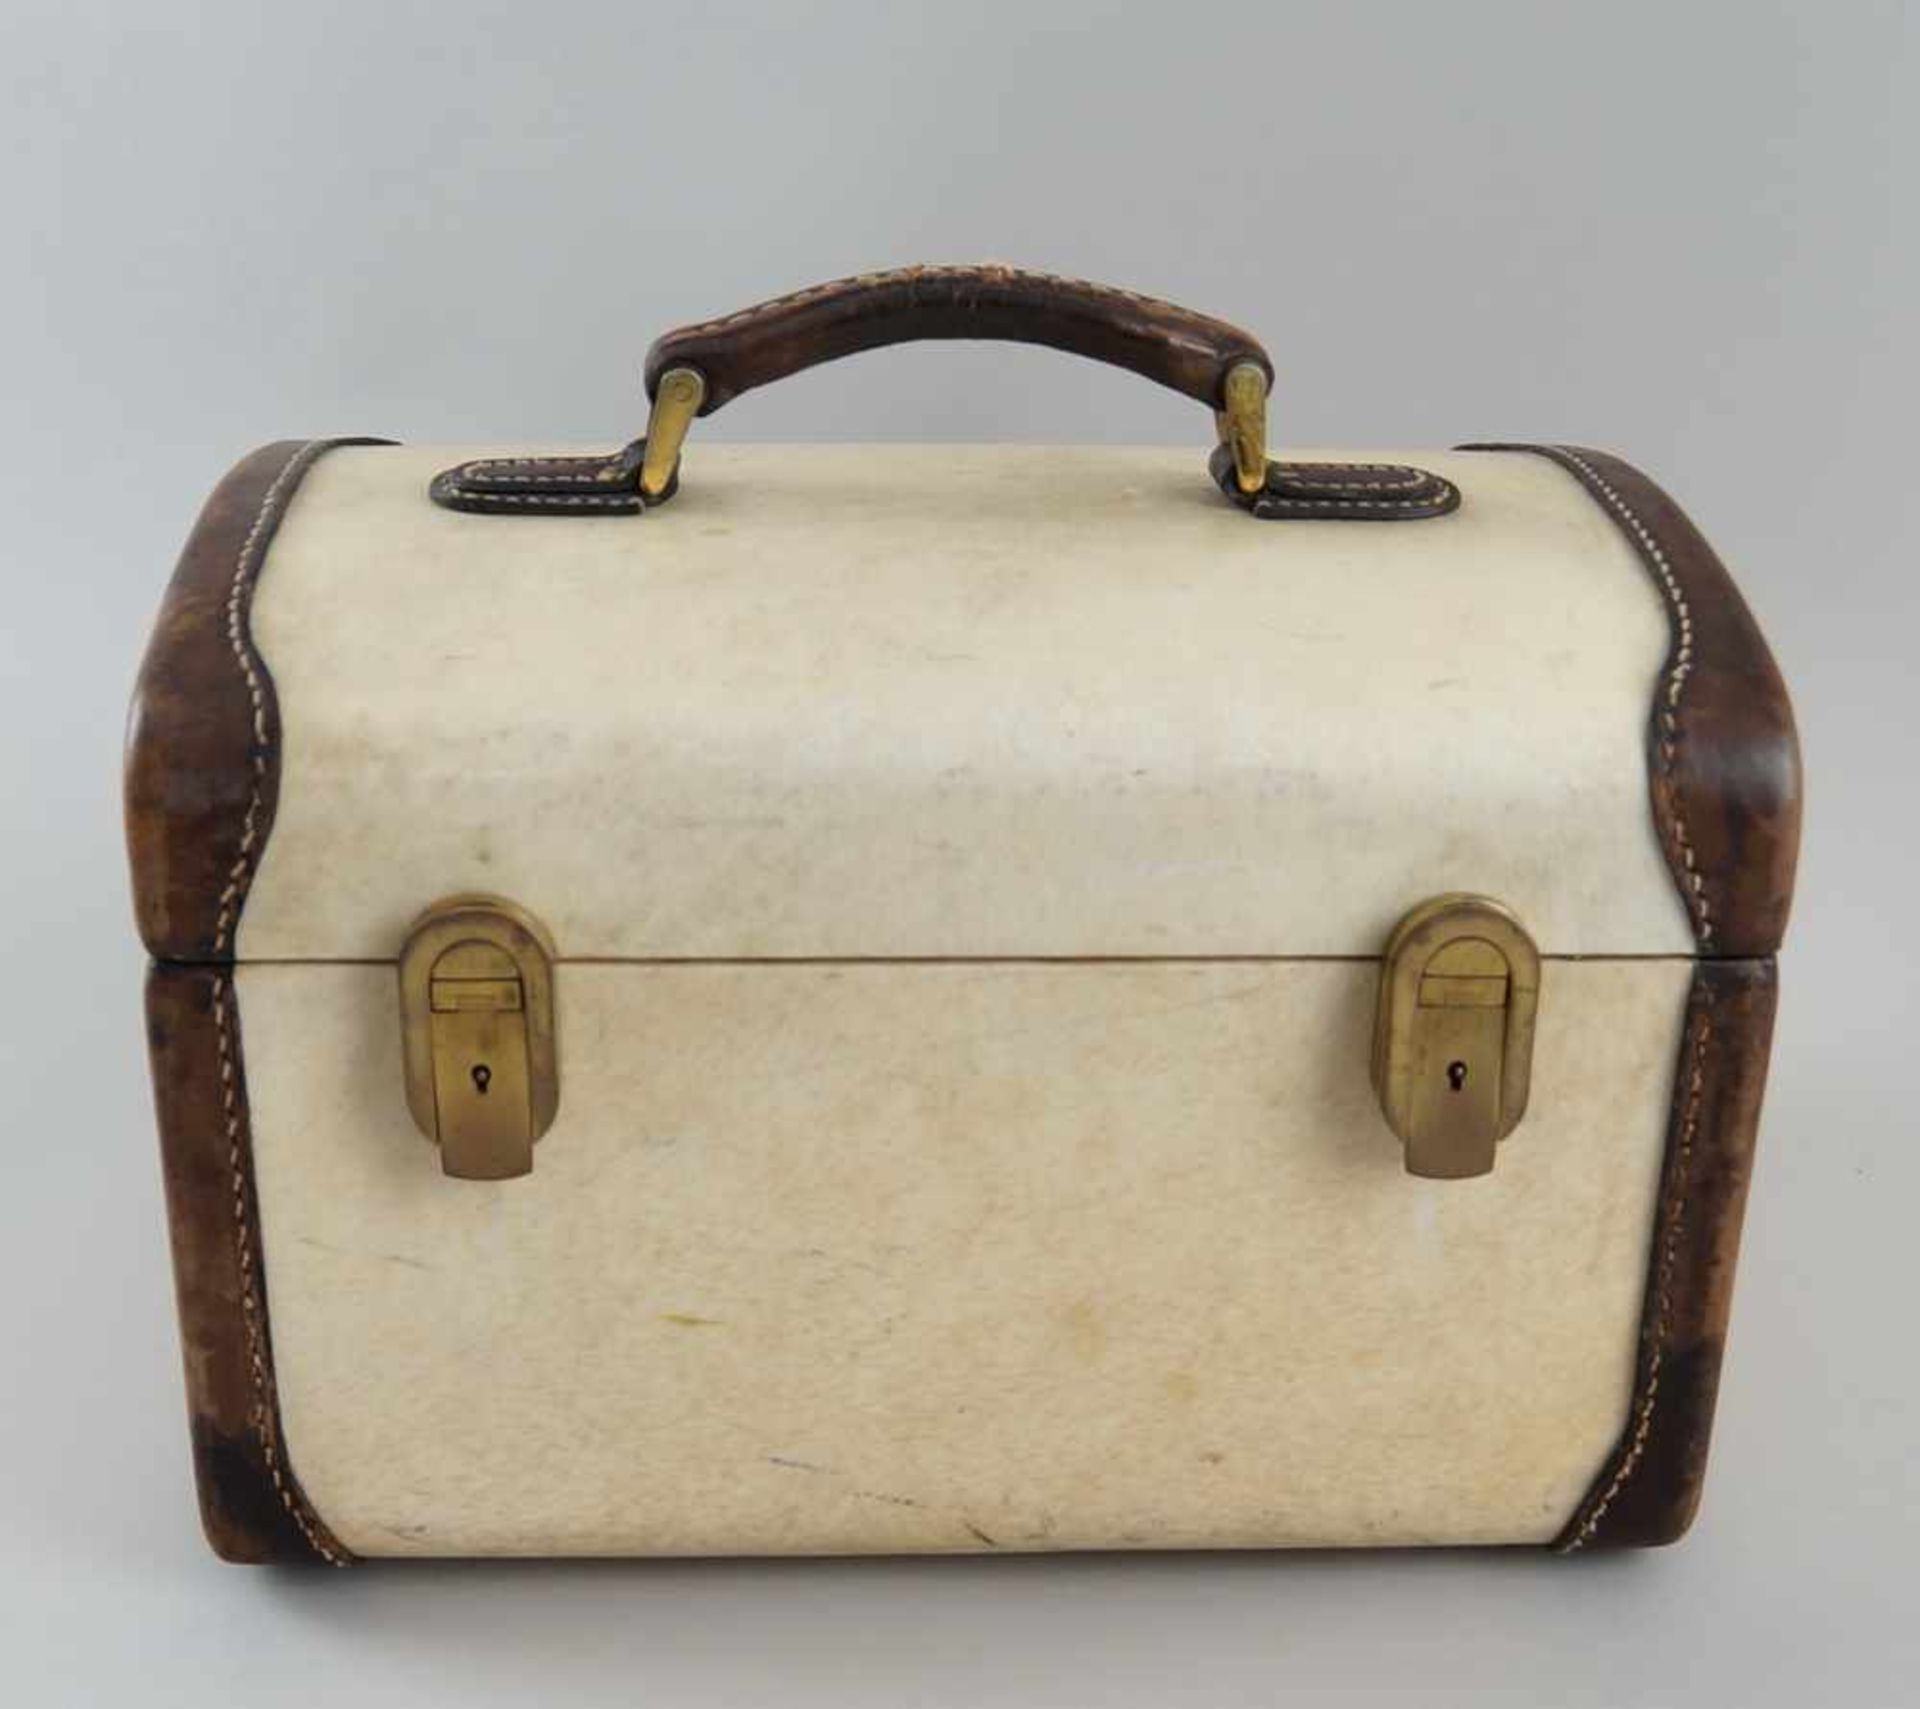 Feiner Koffer mit Beschlägen, Pergament, bezeichnet Franzi Italien, 22x32x22 cm - Bild 3 aus 8